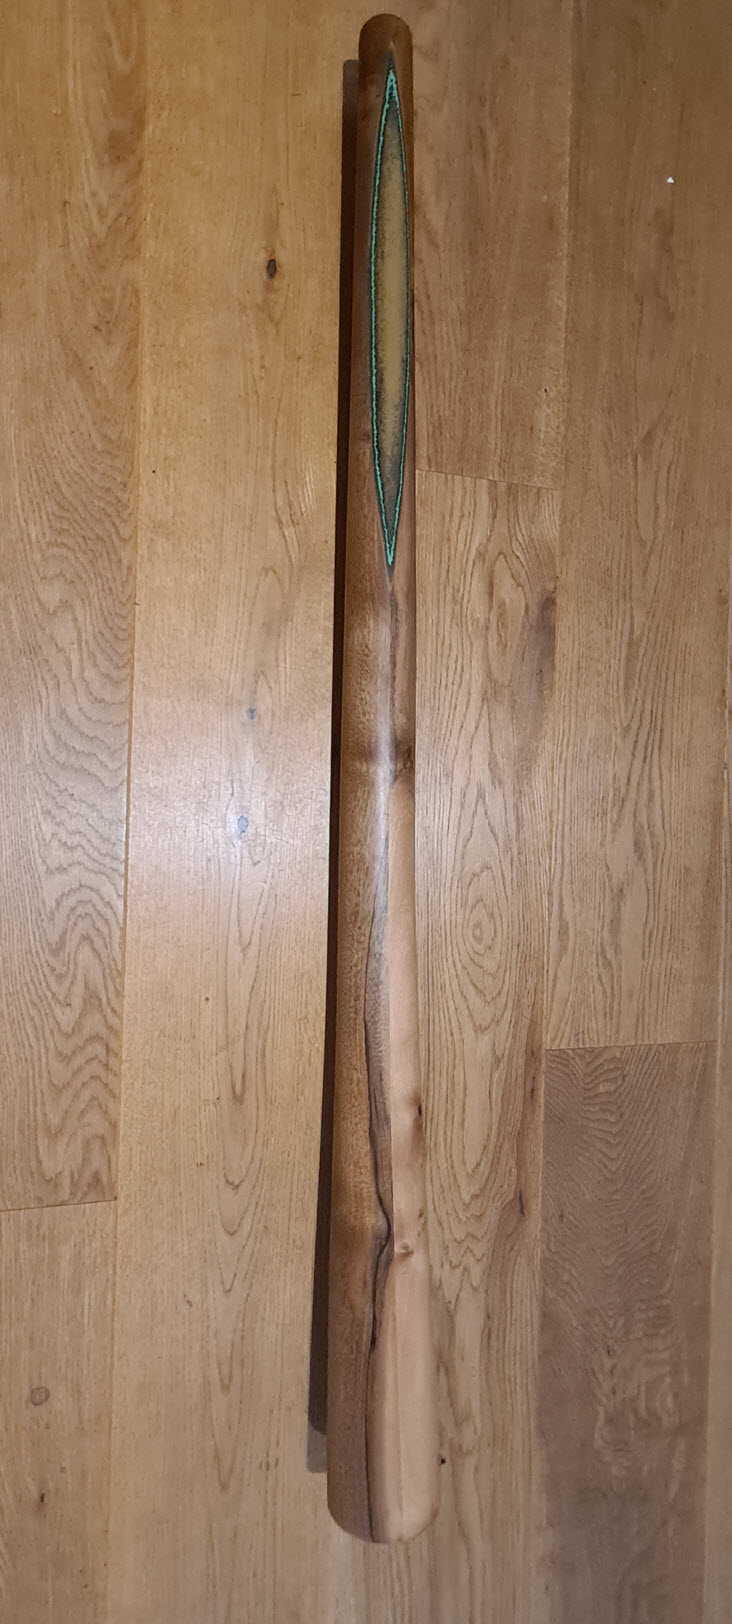 Swiss Didgeridoo 1st Class bemalt 1.2m